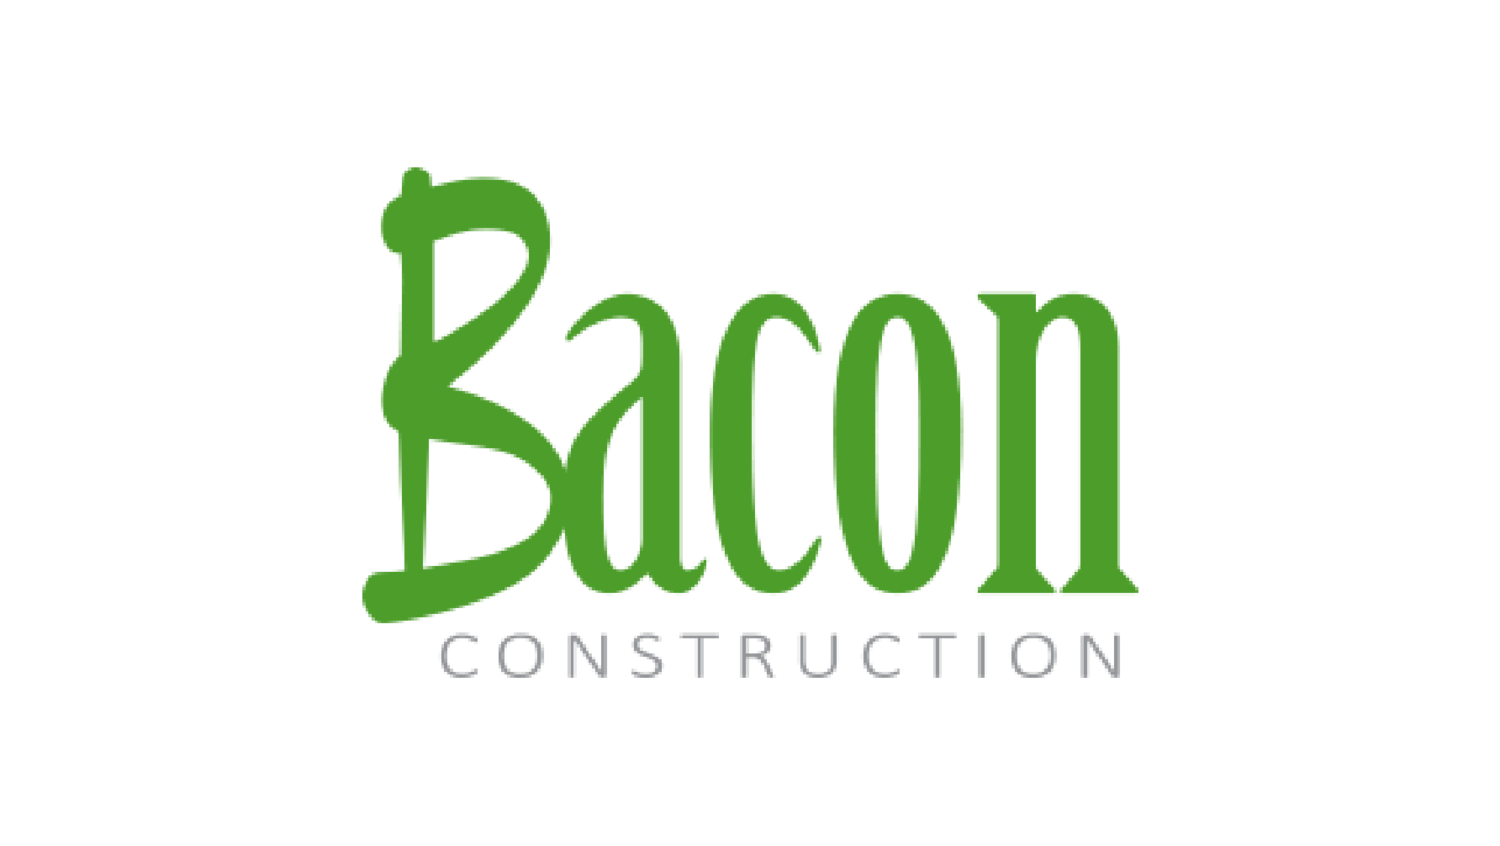 Bacon Construction